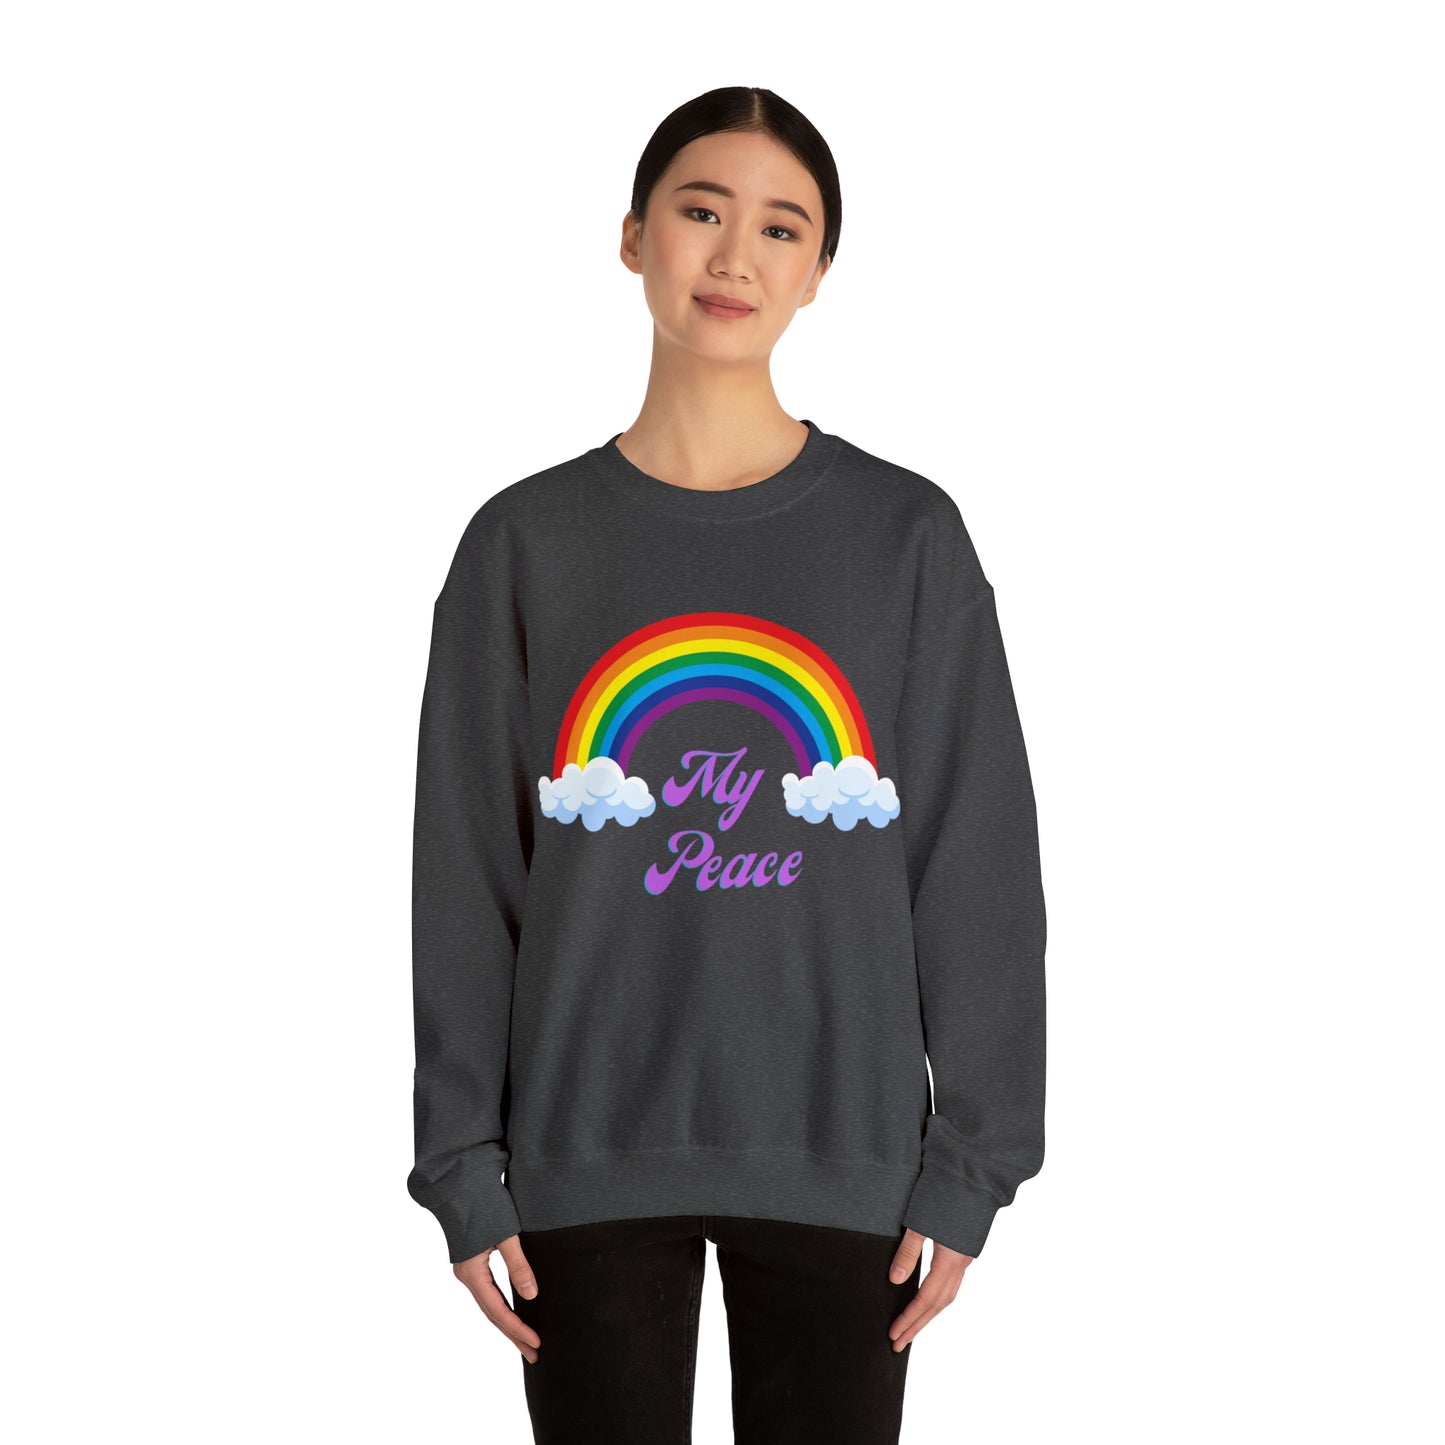 Rainbow design statement Crewneck sweatshirt gift